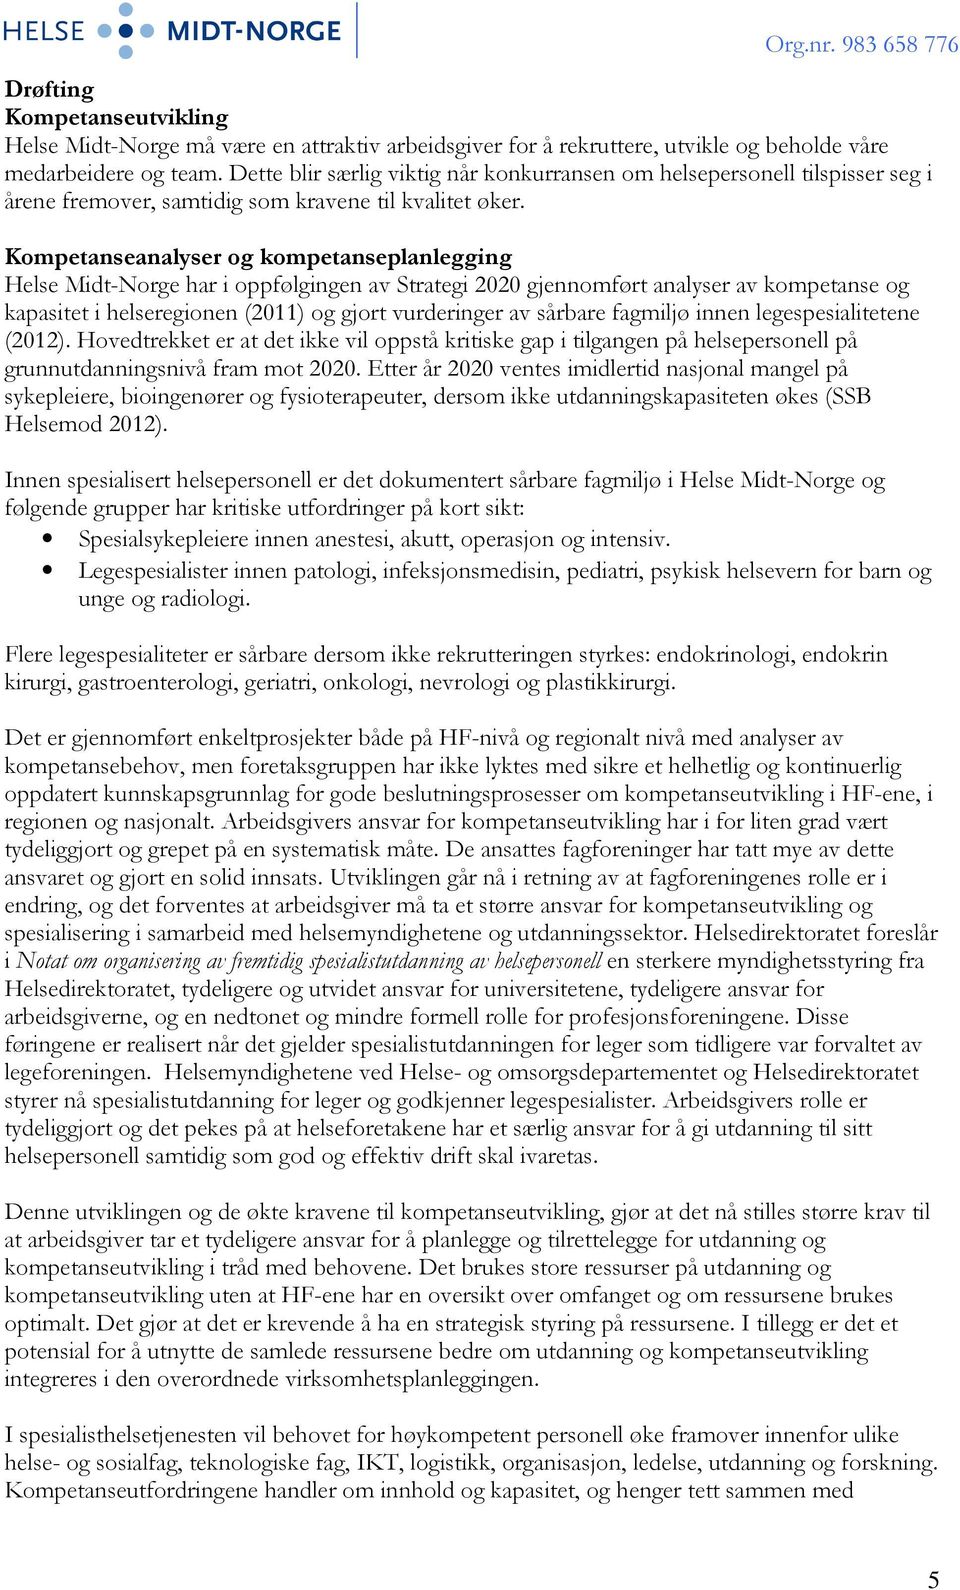 Kompetanseanalyser og kompetanseplanlegging Helse Midt-Norge har i oppfølgingen av Strategi 2020 gjennomført analyser av kompetanse og kapasitet i helseregionen (2011) og gjort vurderinger av sårbare